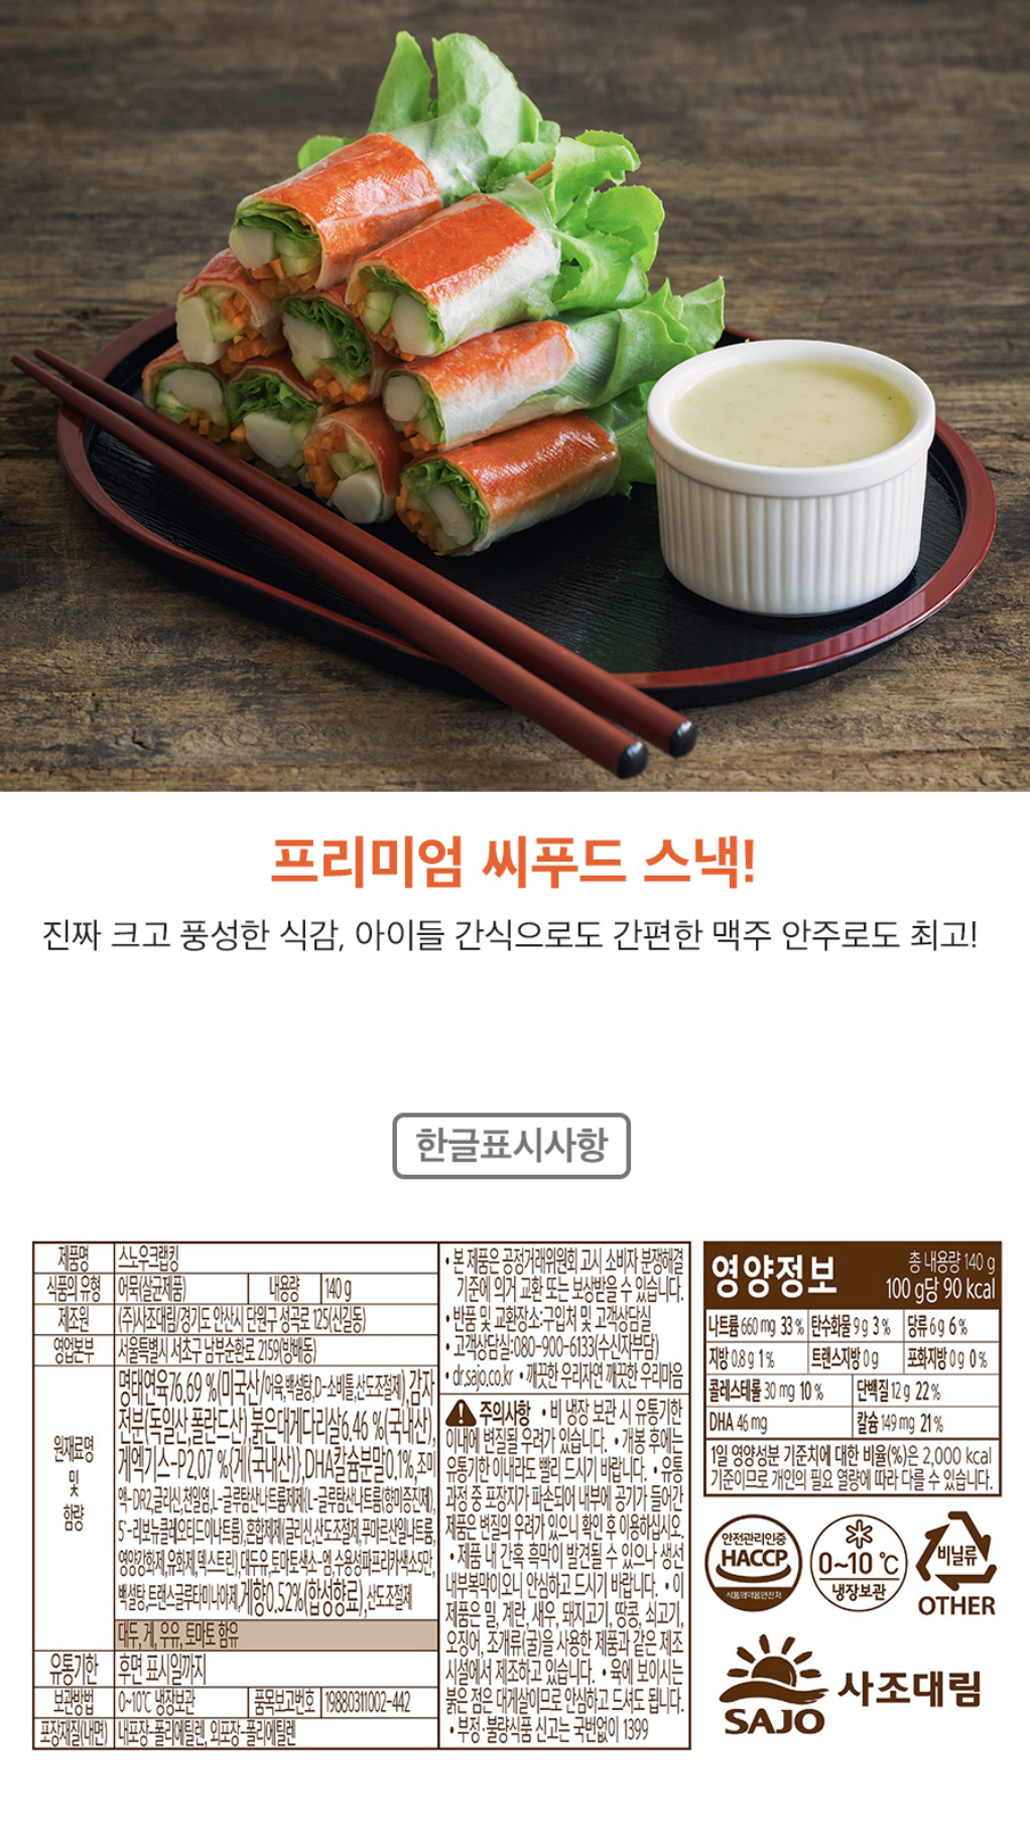 韓國食品-[사조대림] 스노우크랩킹 140g